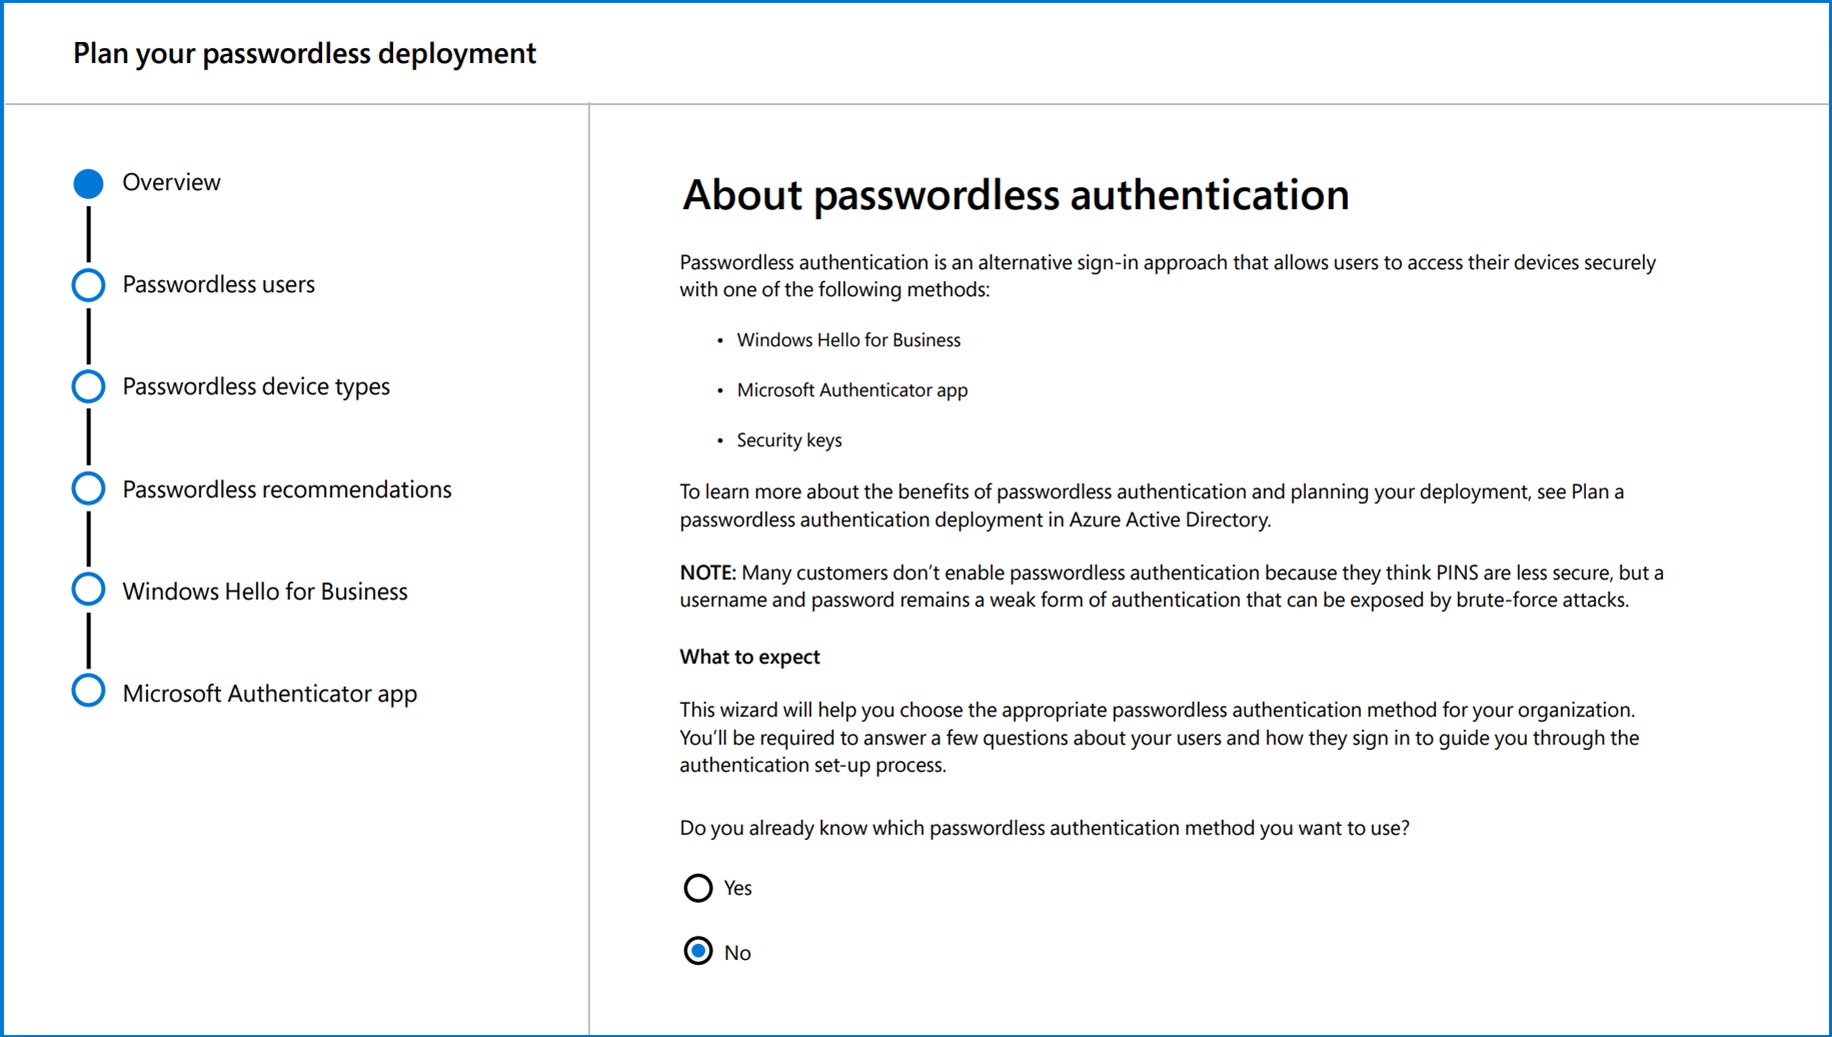 Los enfoques de inicio de sesión de autenticación de contraseña incluyen Windows Hello para empresas, la aplicación Microsoft Authenticator y las llaves de seguridad.